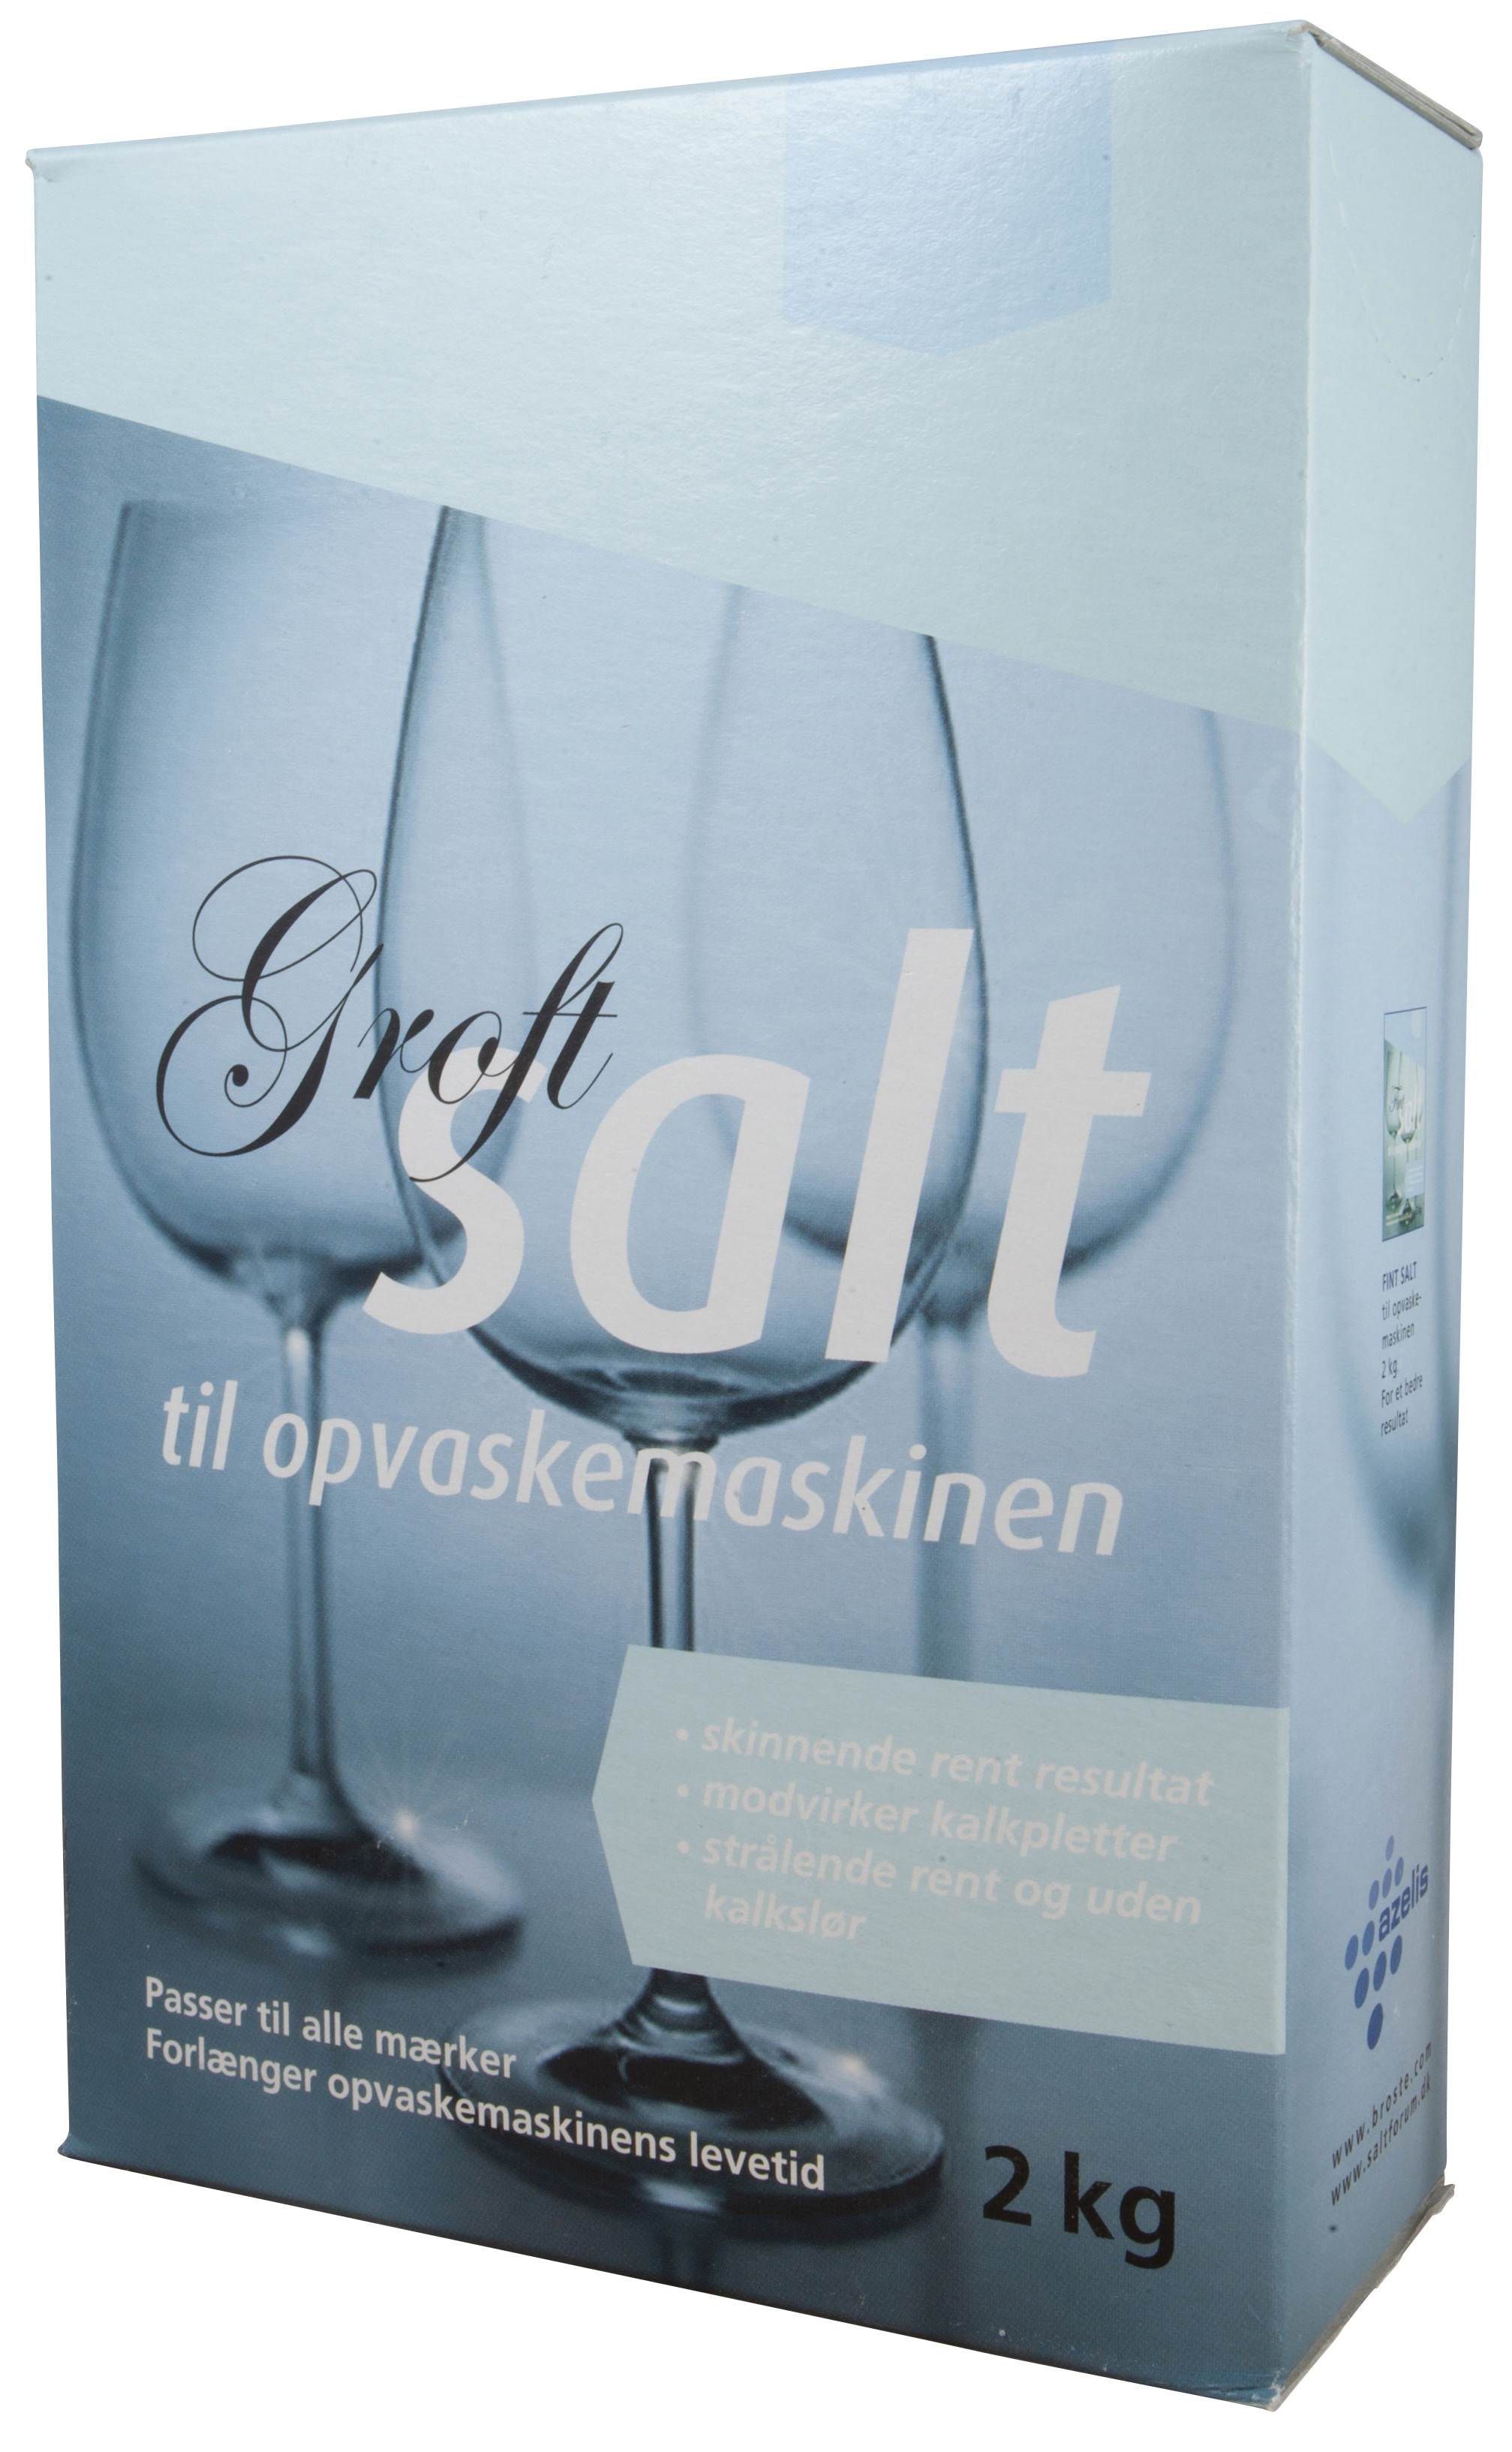 Azelis Filtersalt Groft 2 kg salt til opvaskemaskiner (100136)